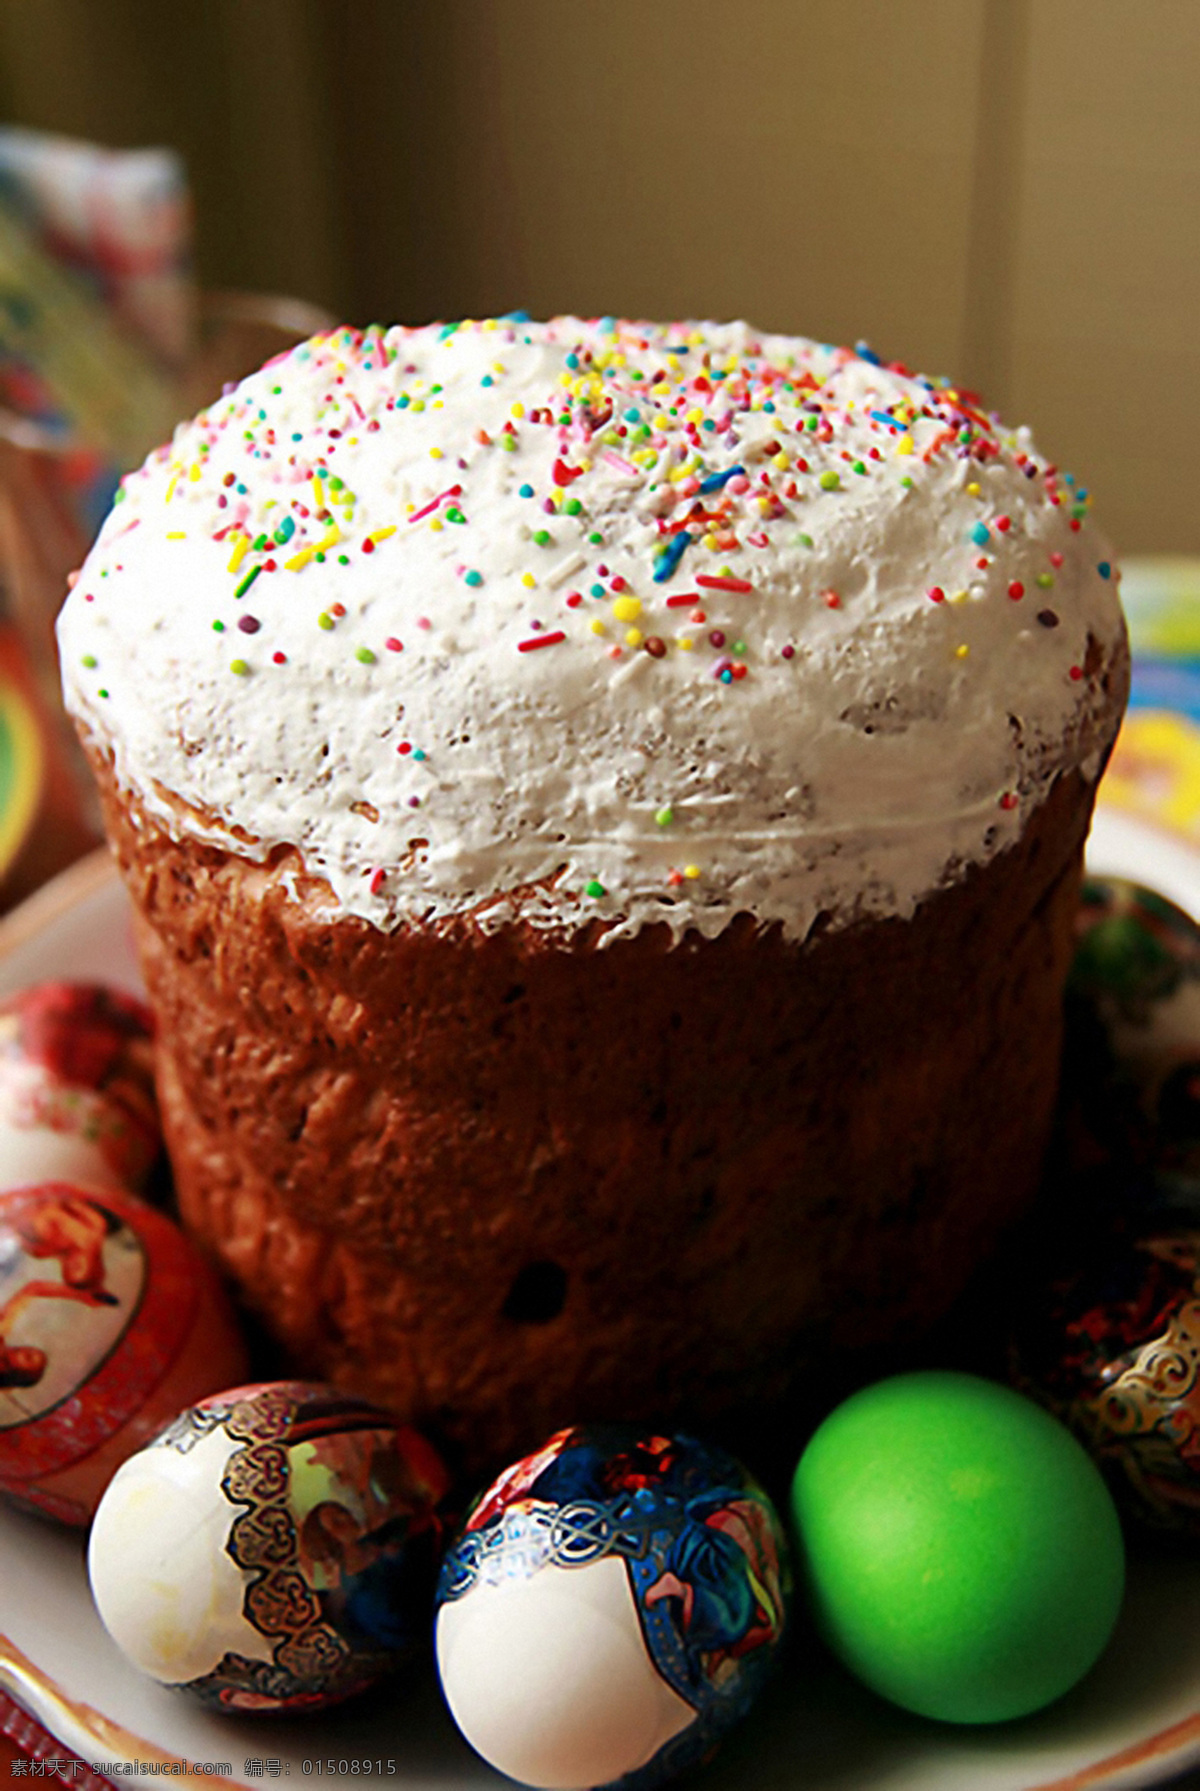 蛋糕 复活节 彩蛋 复活节彩蛋 彩色鸡蛋 鸡蛋 蛋类 复活节素材 鸡蛋摄影 生日蛋糕图片 餐饮美食